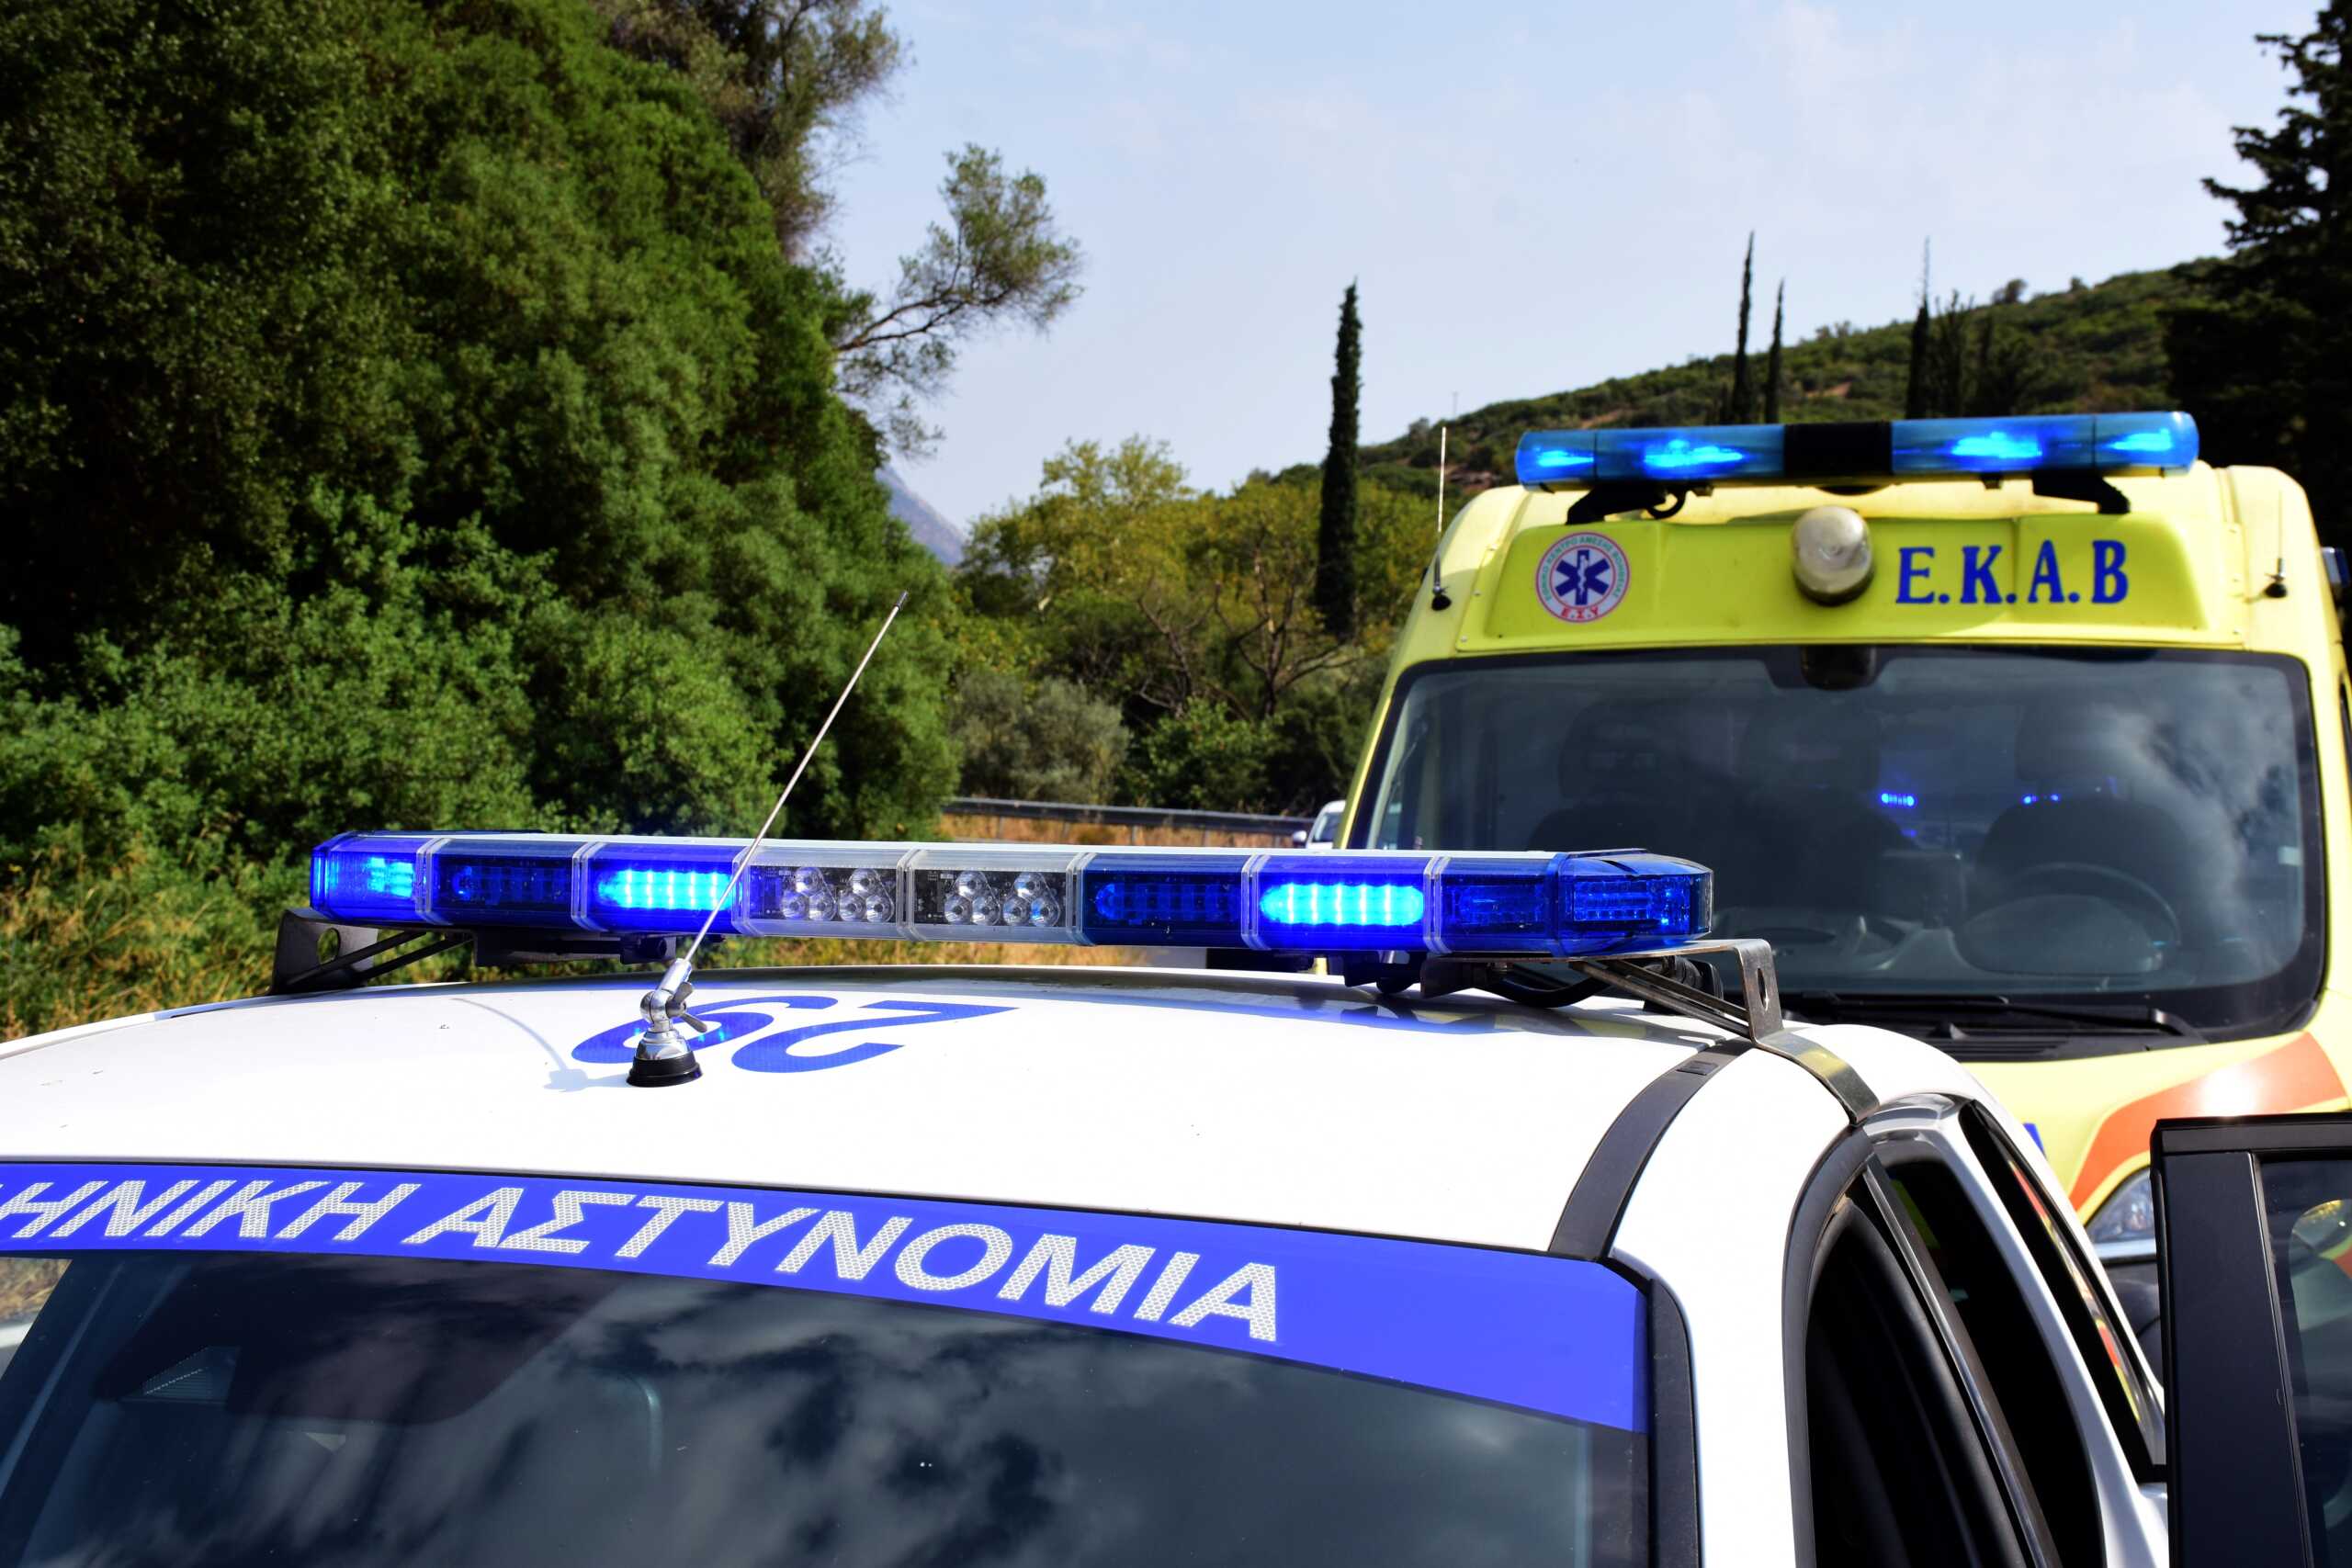 Θεσσαλονίκη: Μαχαίρωσε τη γυναίκα του στο λαιμό μέσα σε αυτοκίνητο, την εγκατέλειψε και διέφυγε